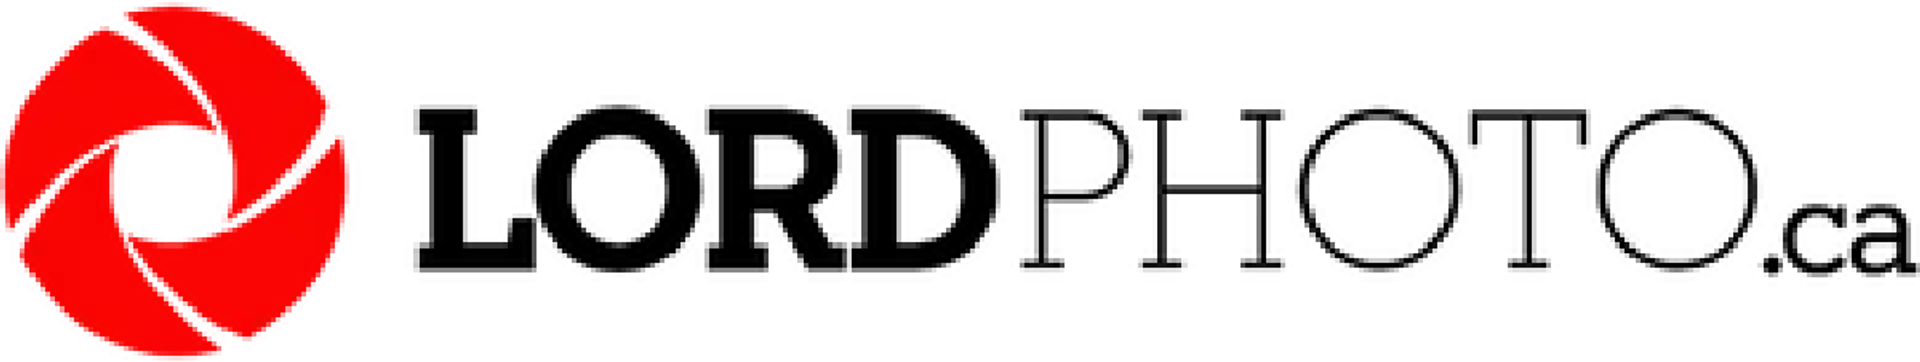 LORD PHOTO logo de circulaire